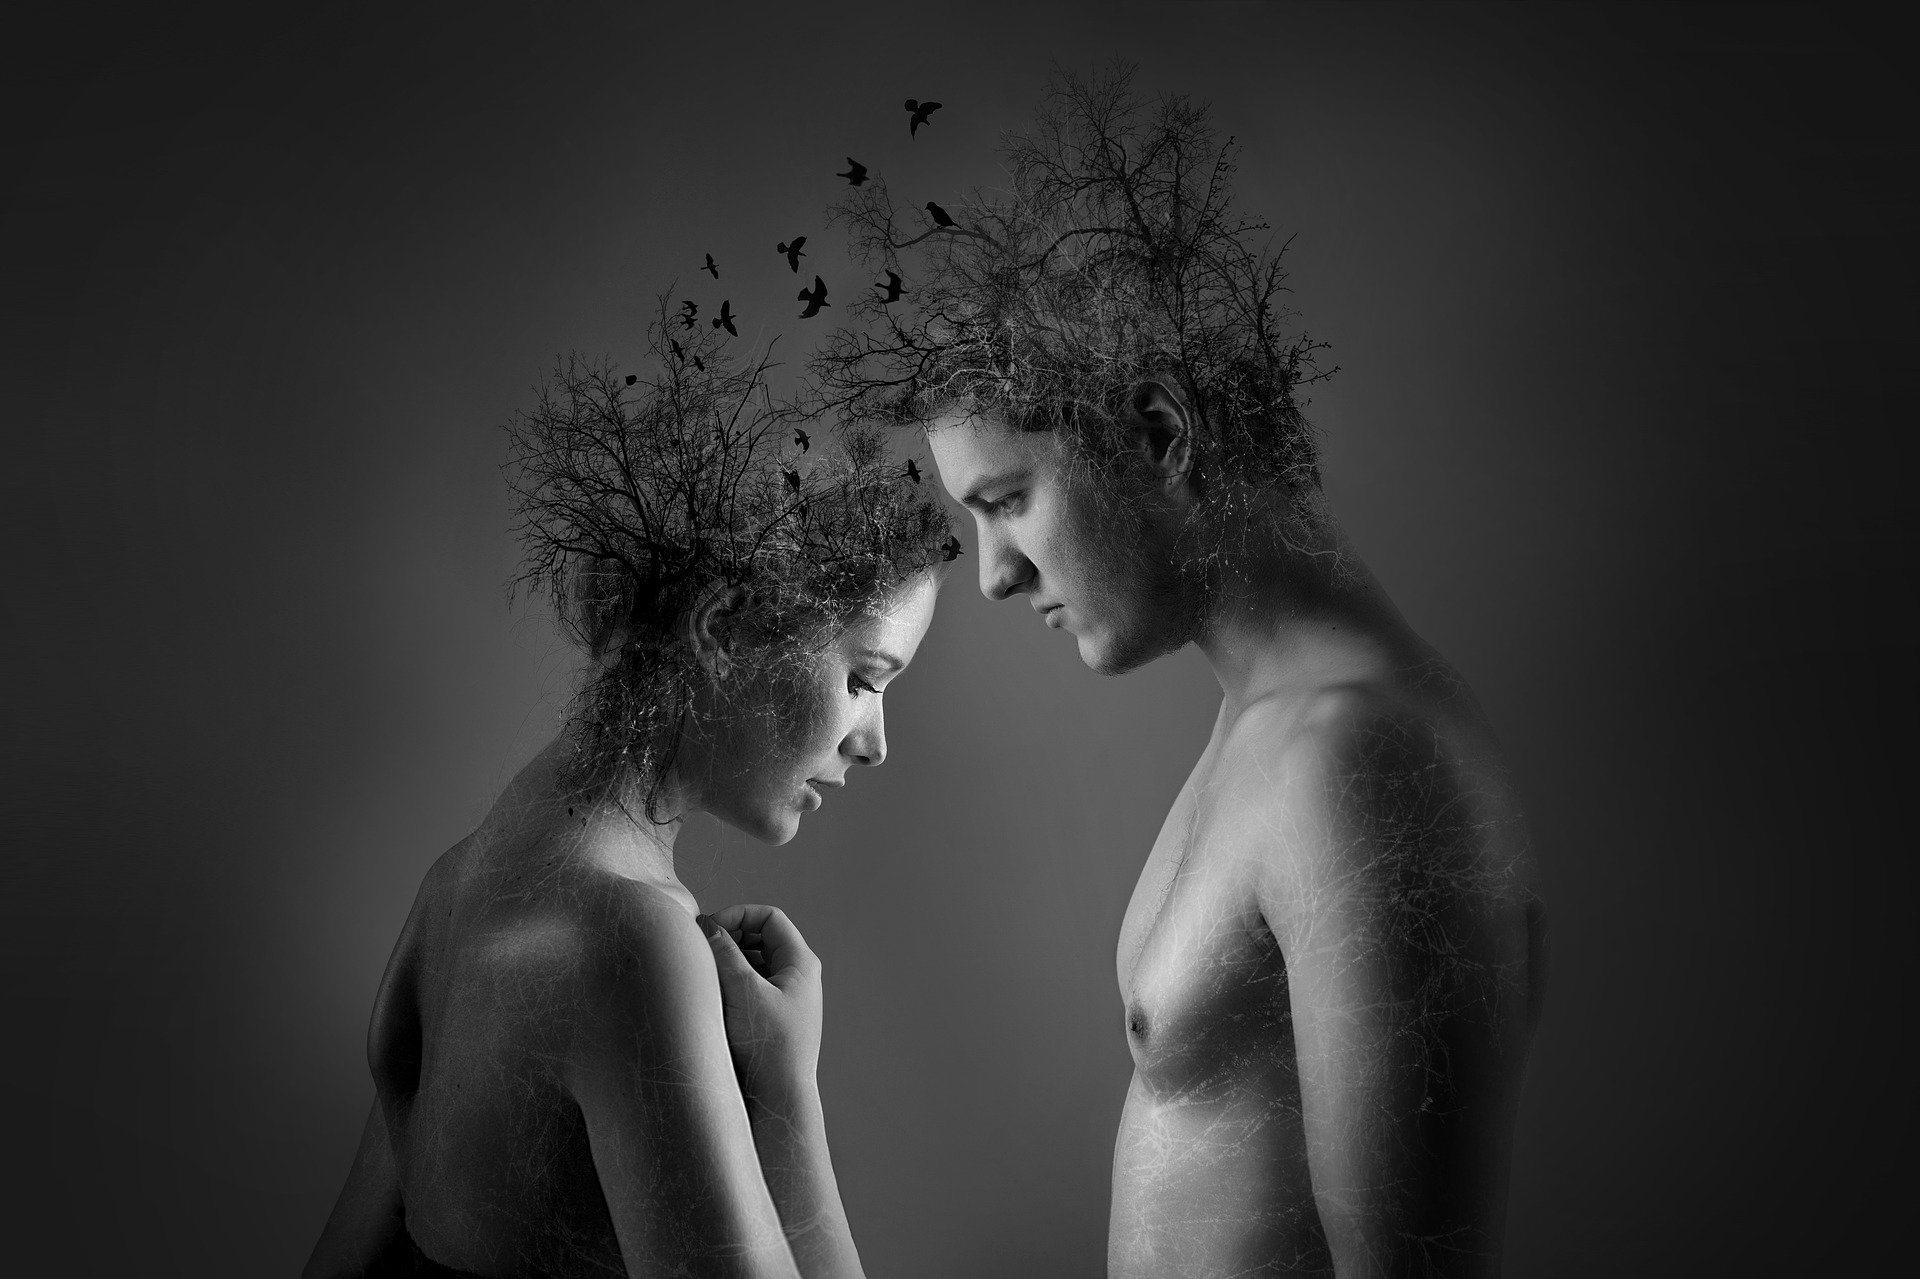 Ilustração gráfica de homem e mulher se conectando por meio de galhos saindo de suas cabeças